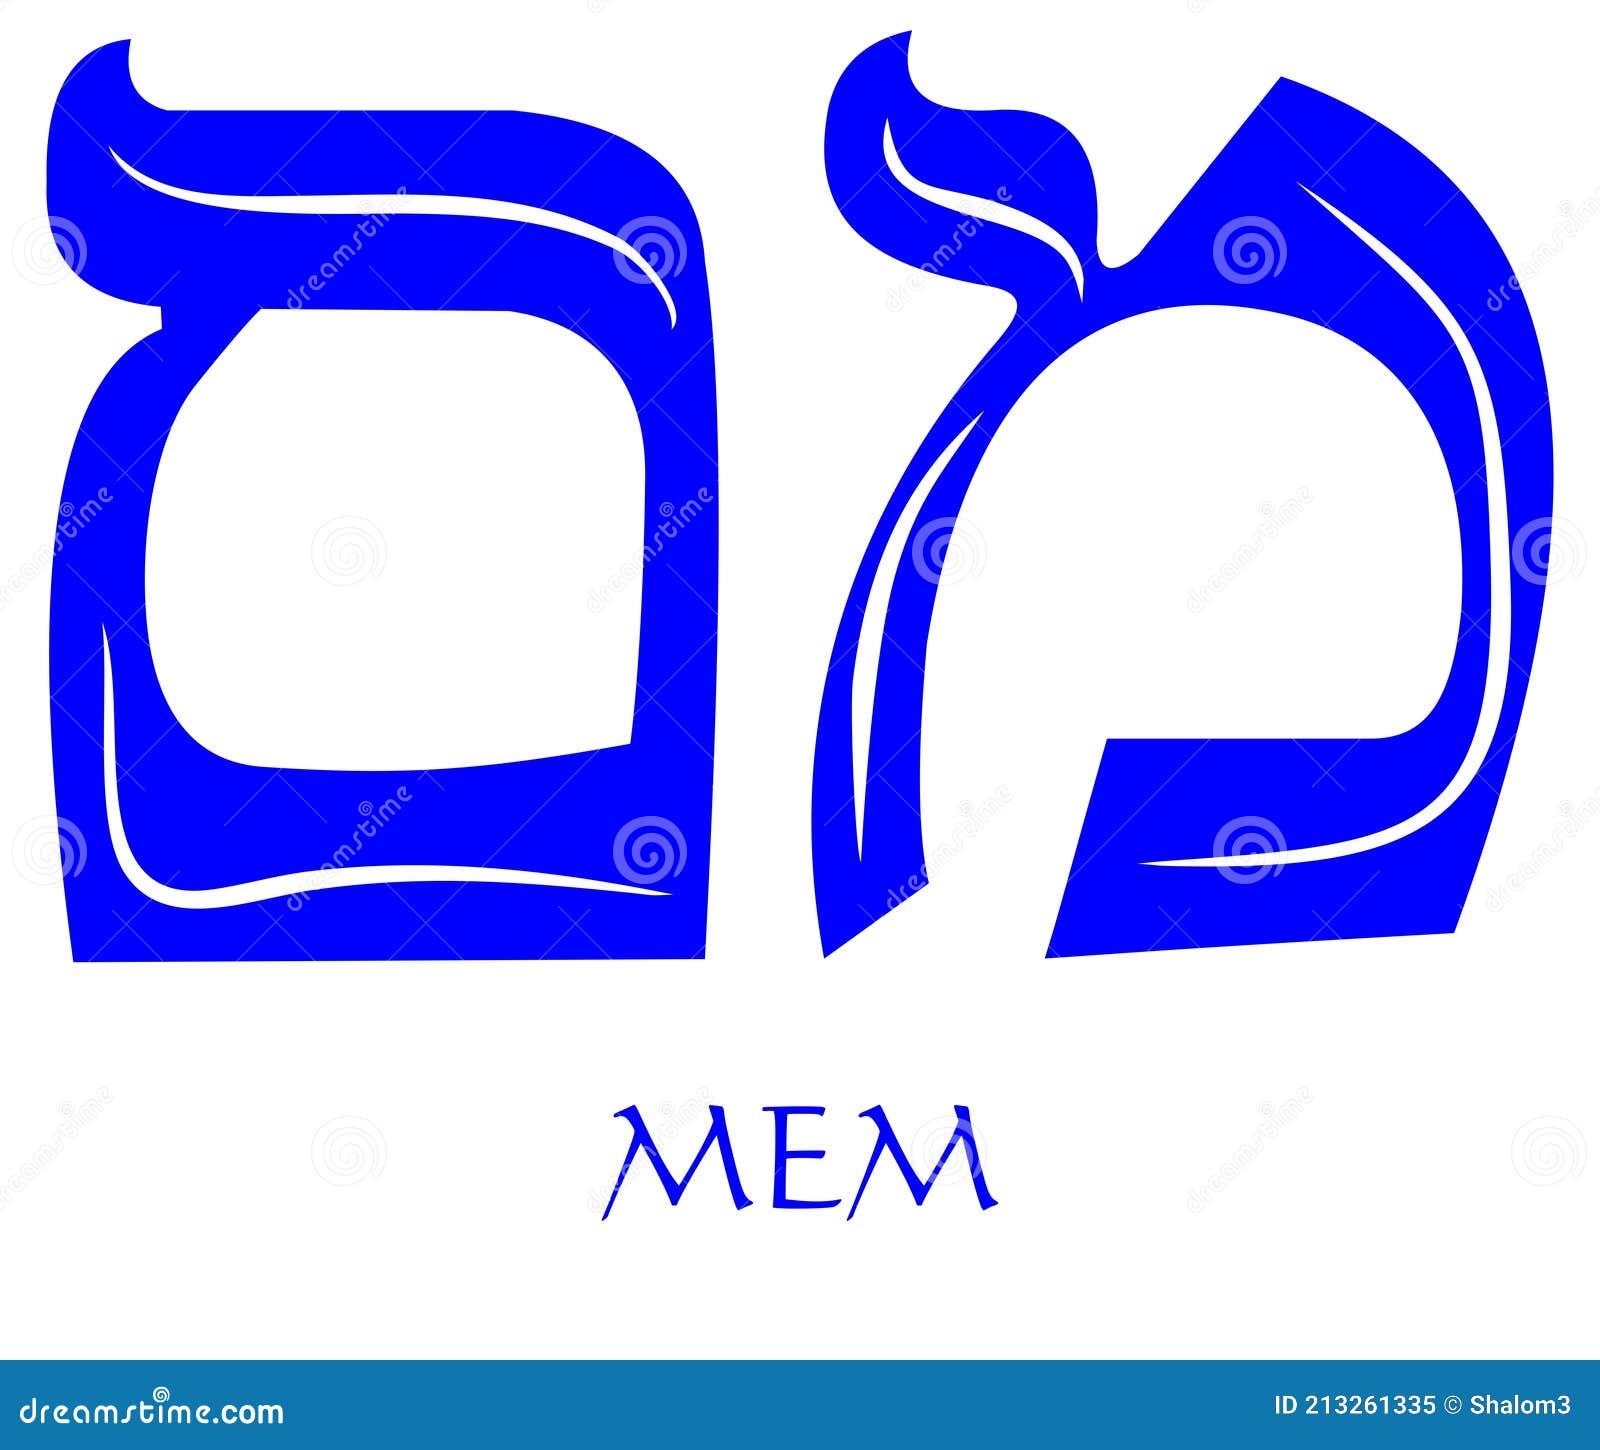 Hebrew Alphabet - Letter Mem, Gematria Water Symbol, Numeric Value 40 ...